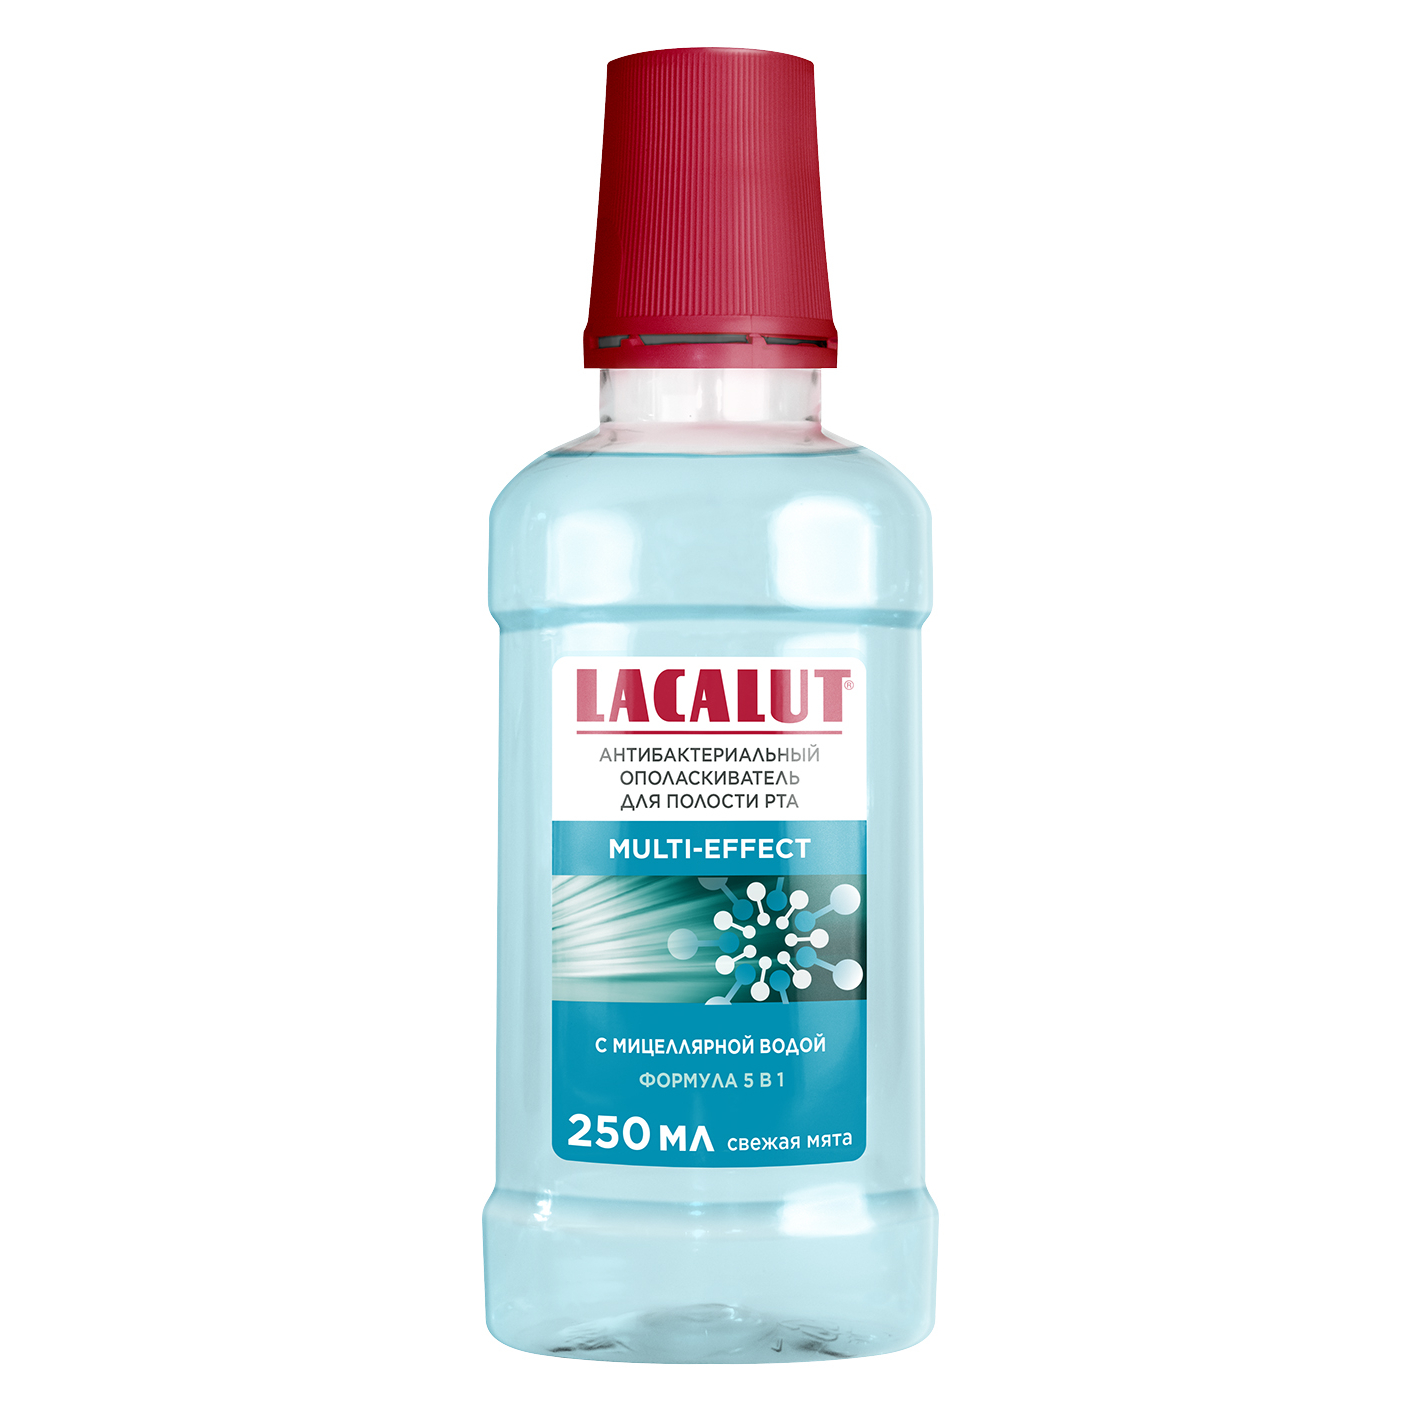 Ополаскиватель для полости рта Lacalut multi-effect антибактериальный 250 мл ополаскиватель для полости рта lacalut multi effect 250 мл